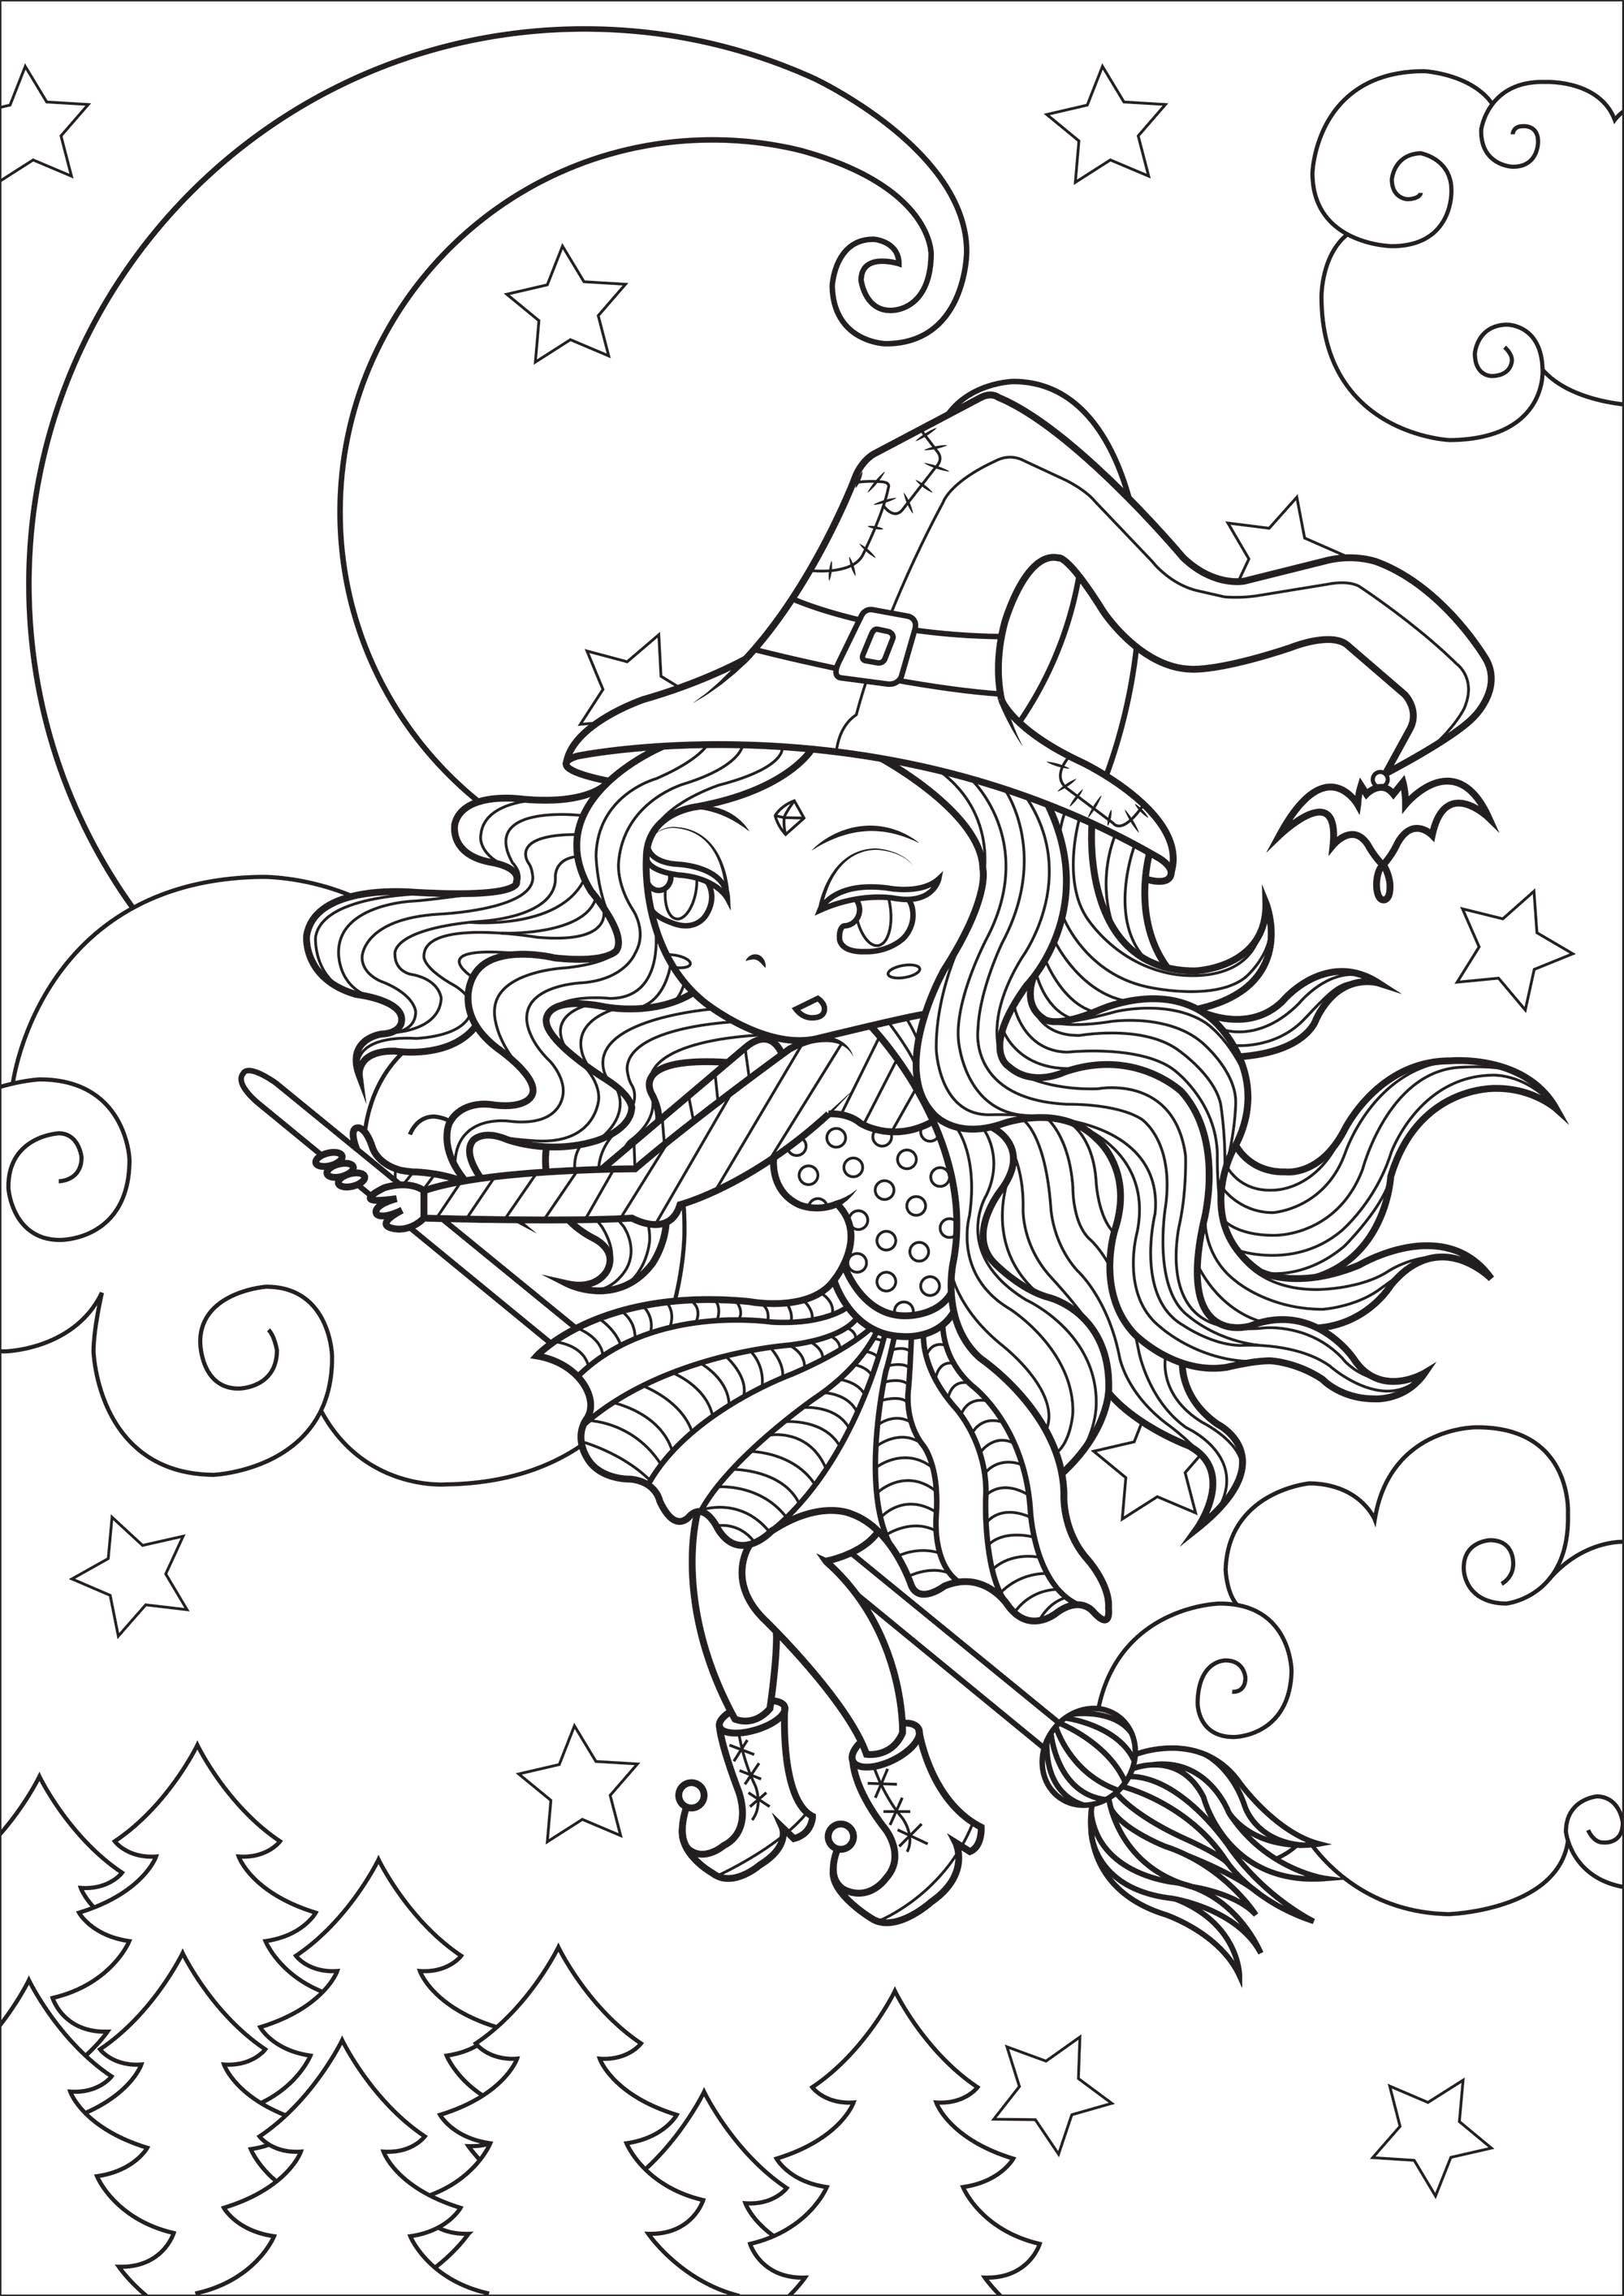 Bruxa em voo. Esta página original para colorir representa uma bruxa com a sua roupa colorida e o seu chapéu pontiagudo, em pleno voo em frente a um céu estrelado e a uma bonita lua.